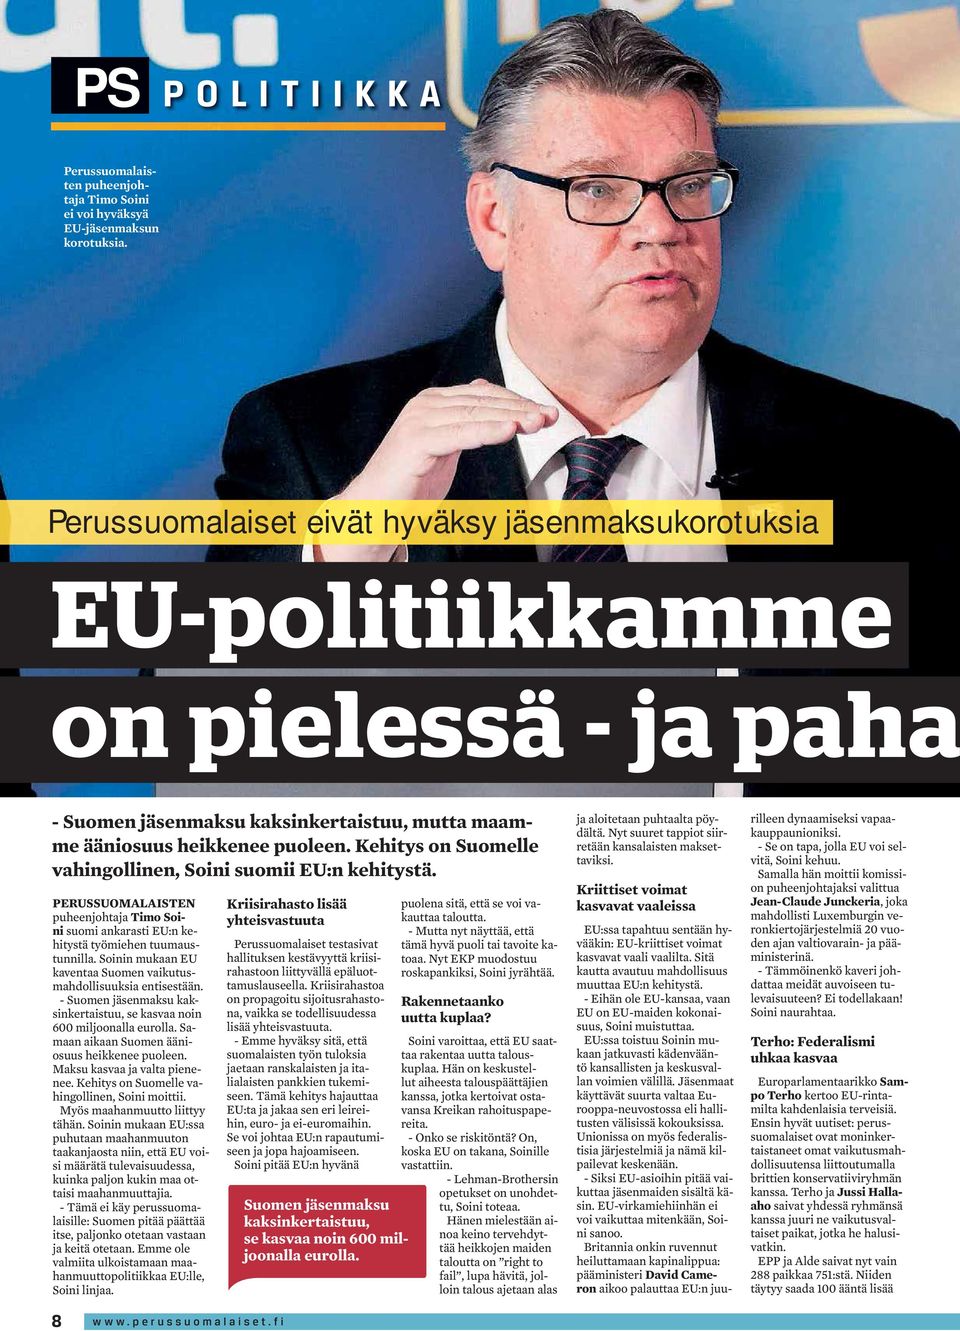 Kehitys on Suomelle vahingollinen, Soini suomii EU:n kehitystä. PERUSSUOMALAISTEN puheenjohtaja Timo Soini suomi ankarasti EU:n kehitystä työmiehen tuumaustunnilla.